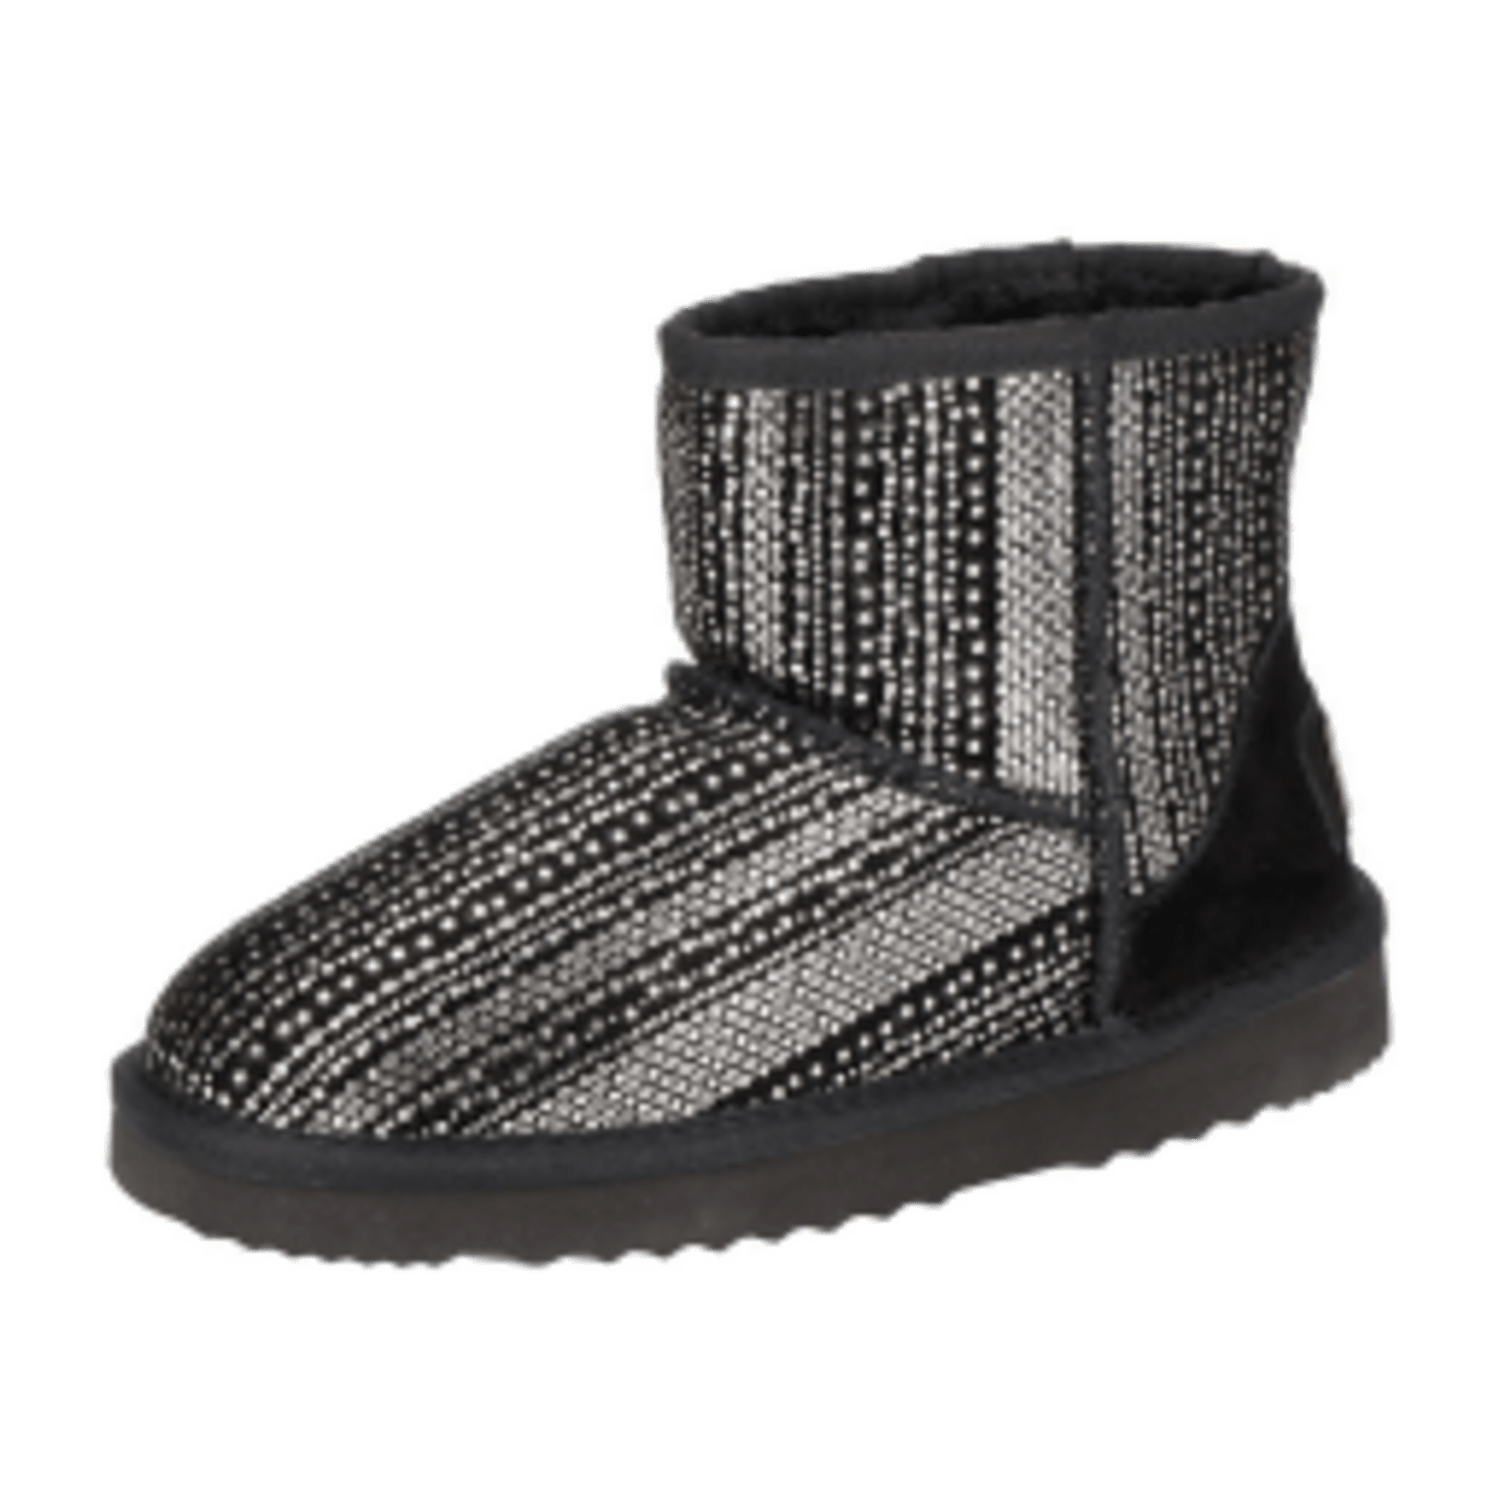 OOG Stiefel schwarz silber Mini Boots 585469